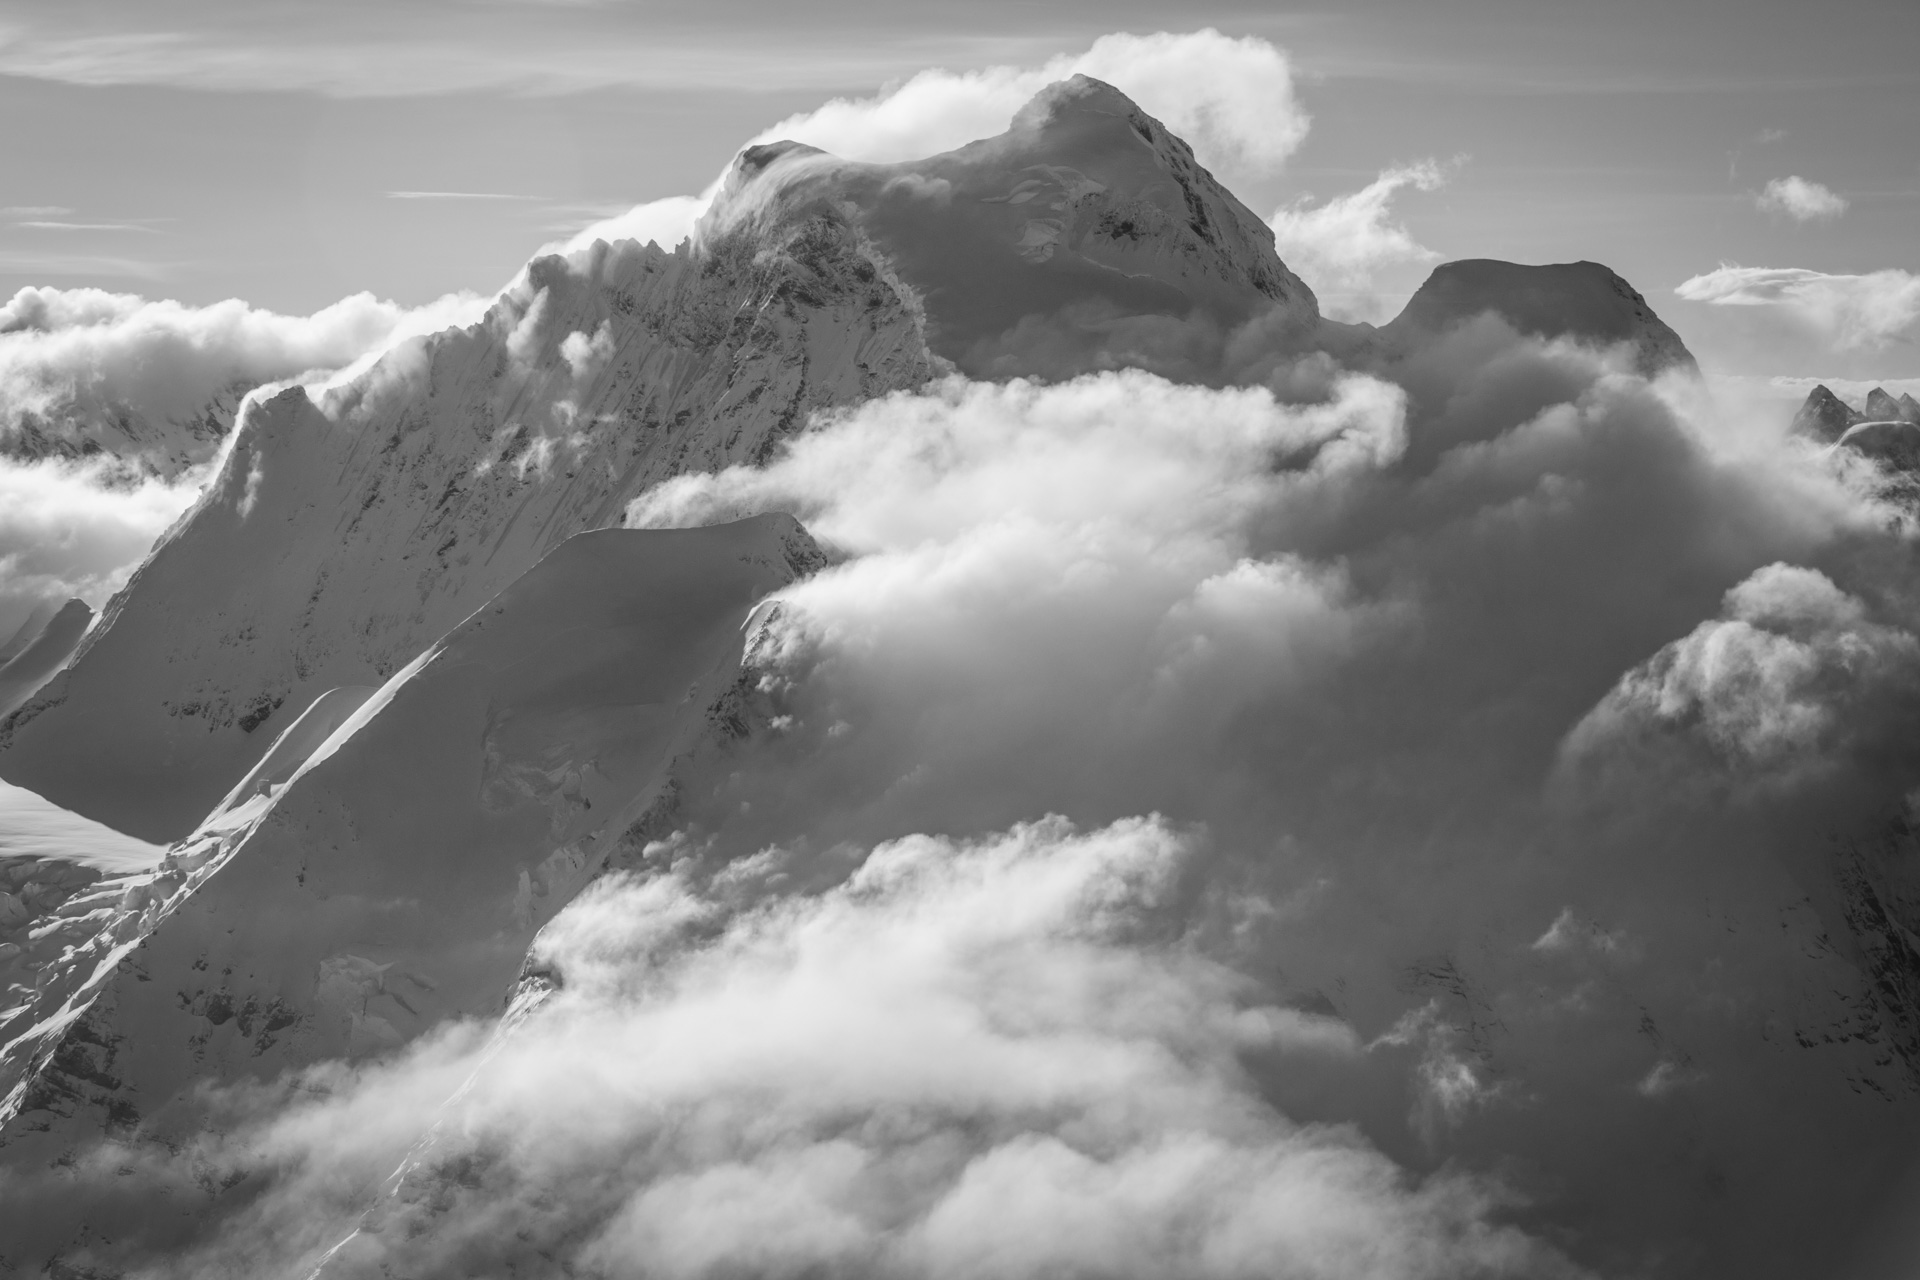 Jungfrau - Mer de nuages sur les sommets des montagnes suisses des Alpes en noir et blanc